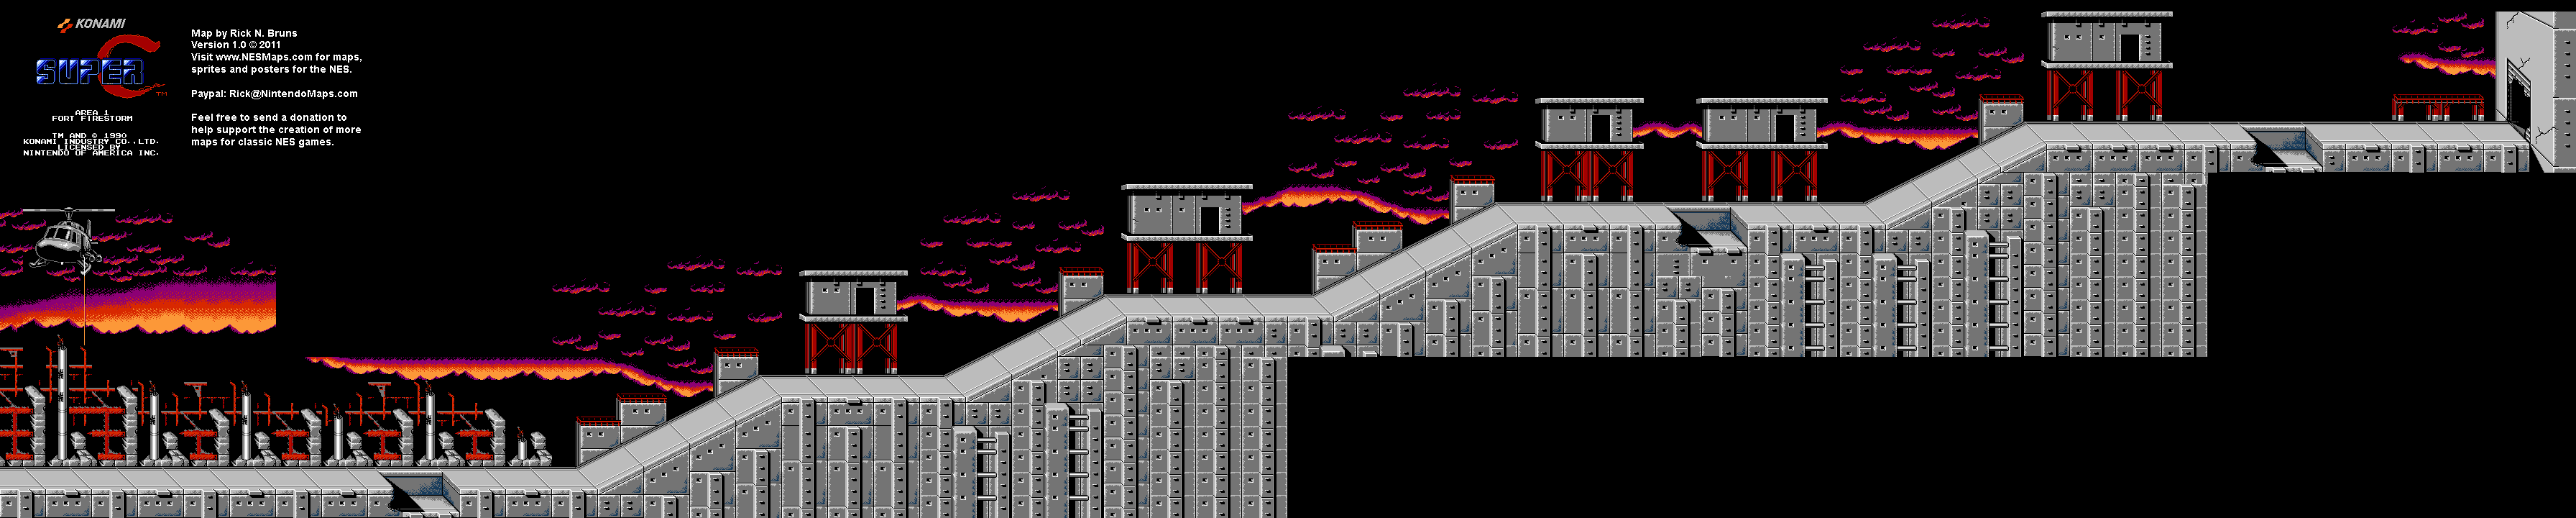 Super C - Area 1 - Nintendo NES Map BG